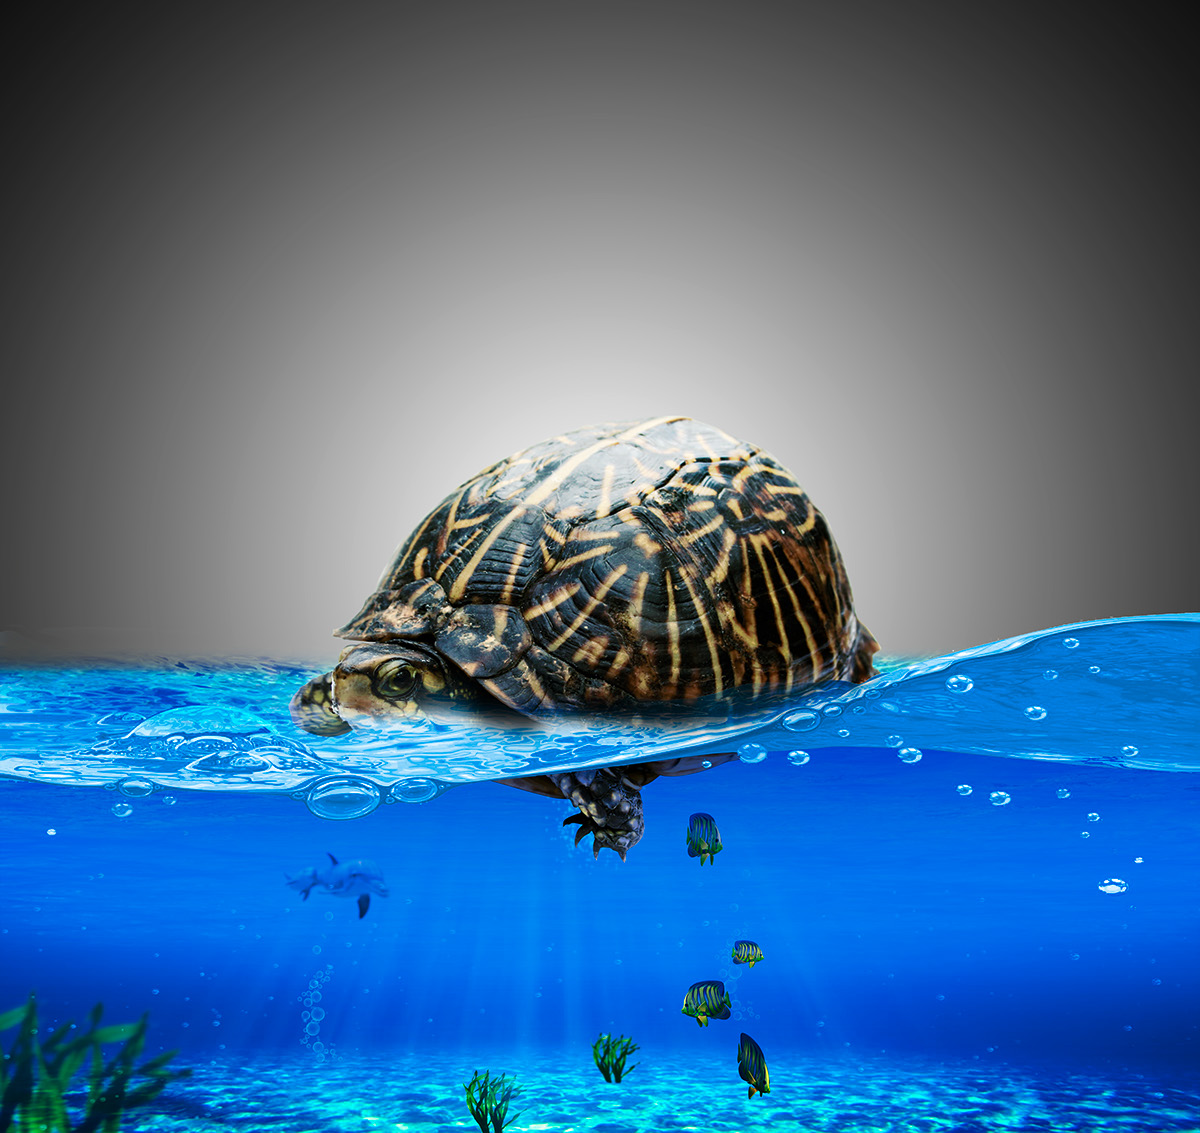 Turtle Manipulation Turtle manipulation ŞÜKRÜ ÇERÇİ  PS see deniz şehir manuplasyon kablumbağa tarih su altı hazine